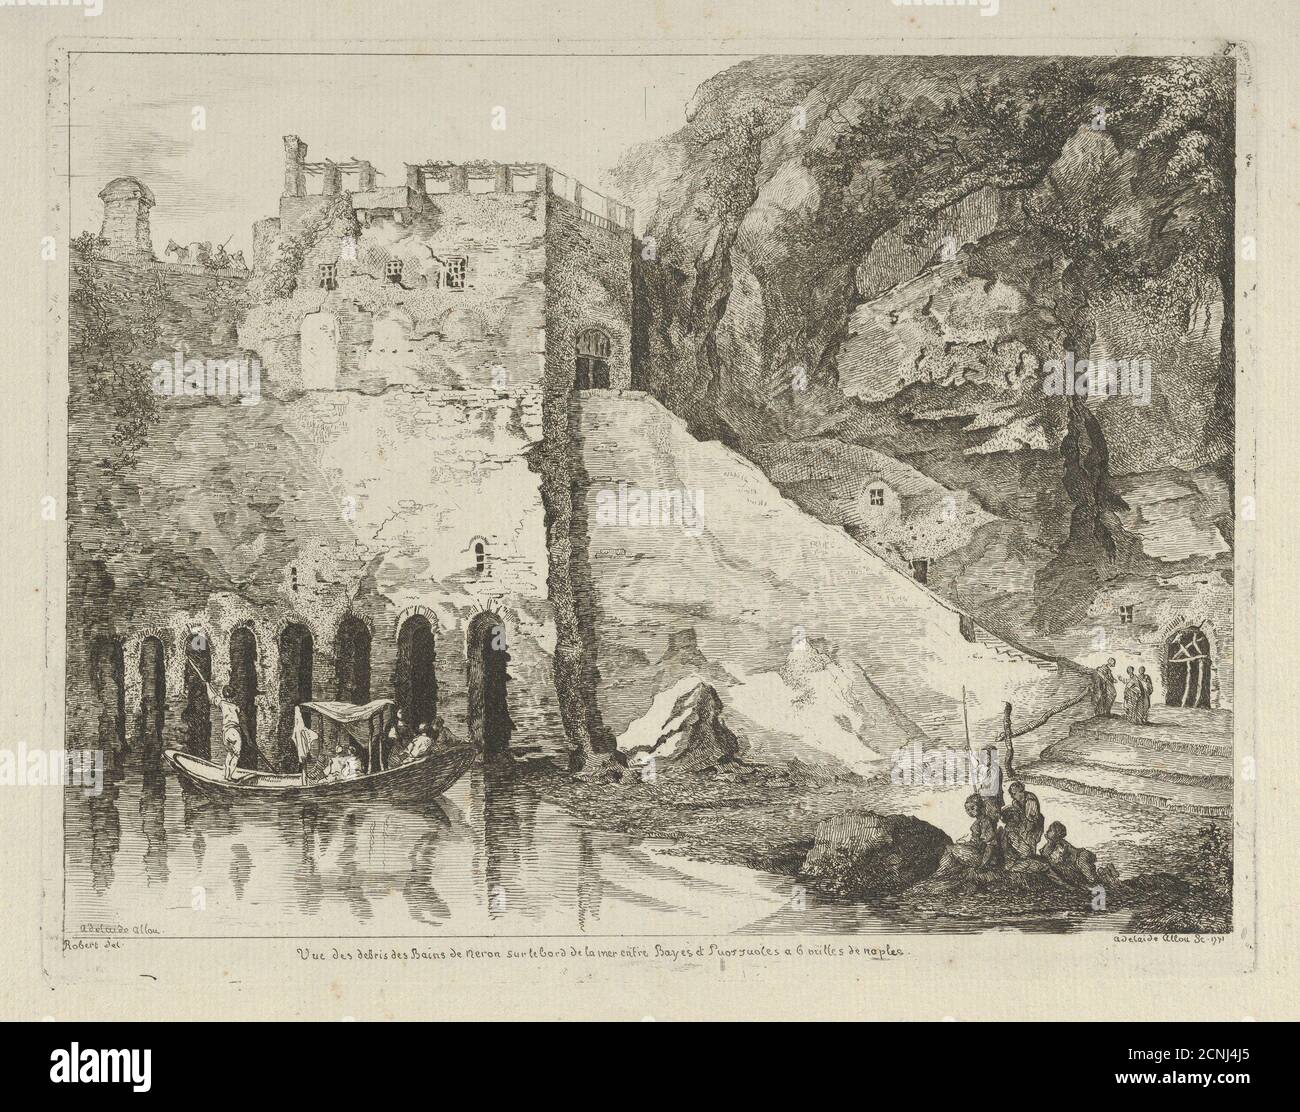 Vue des Debris des bains de Neron aus Differentes vues dessin&#xe9; d'apr&#xe8;s Natur... dans les environs de Rome et de Naples, 18. Jahrhundert. Stockfoto